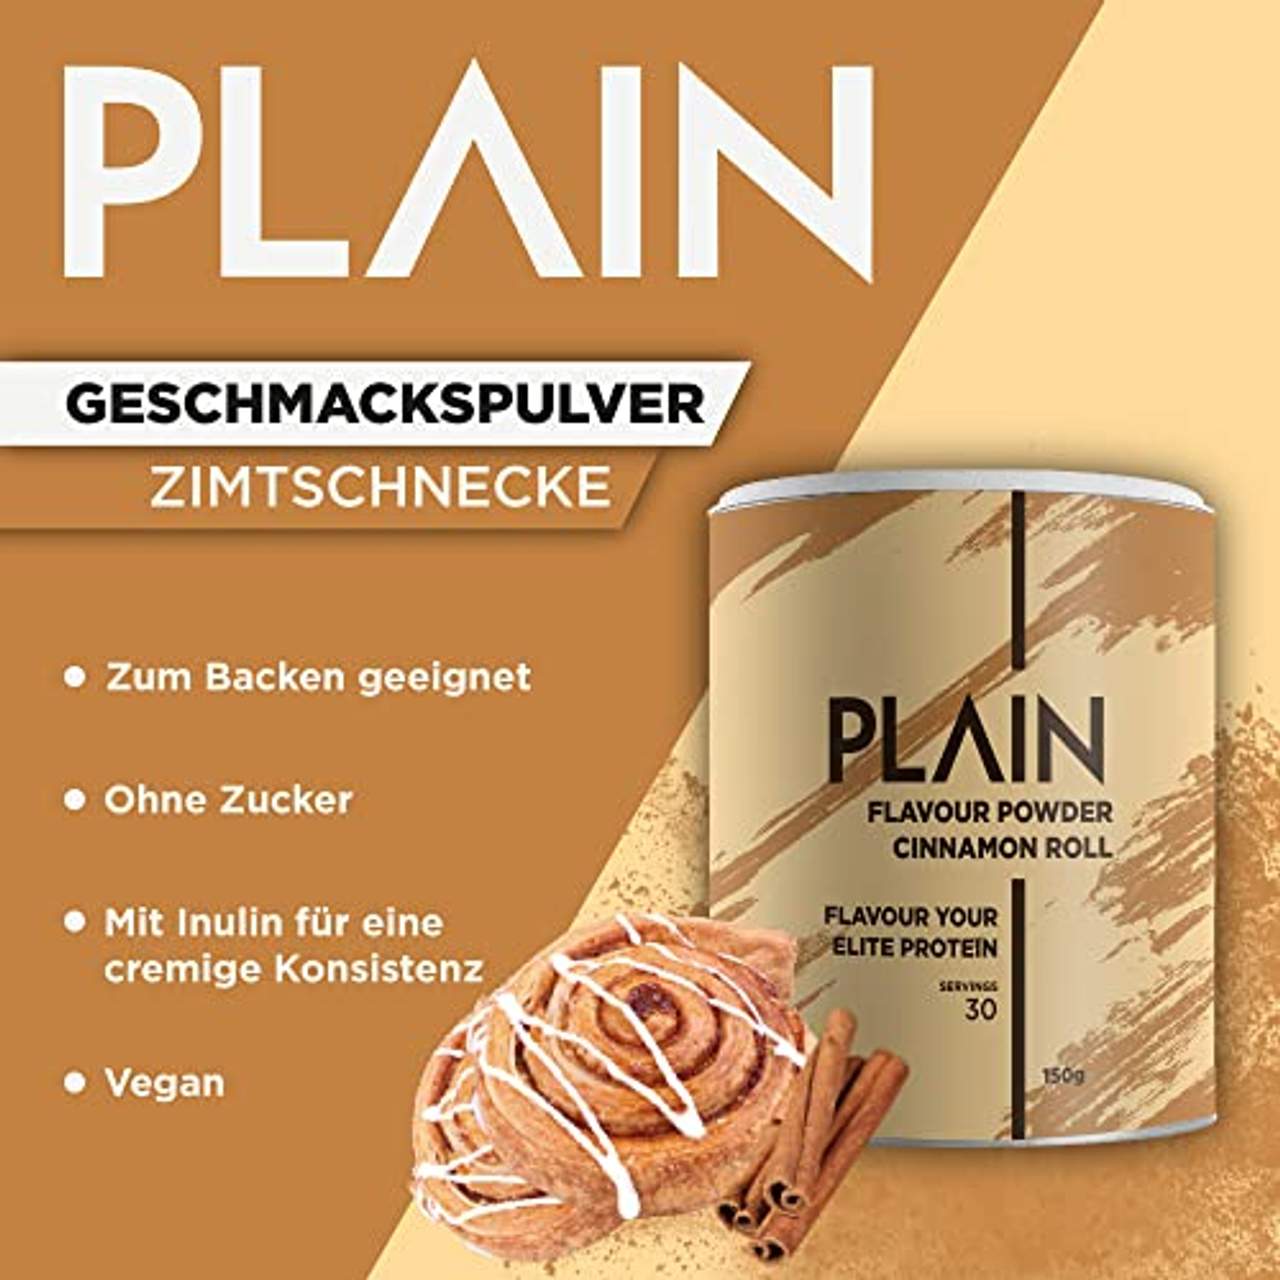 PLAIN Flavour Powder Zimtschnecke